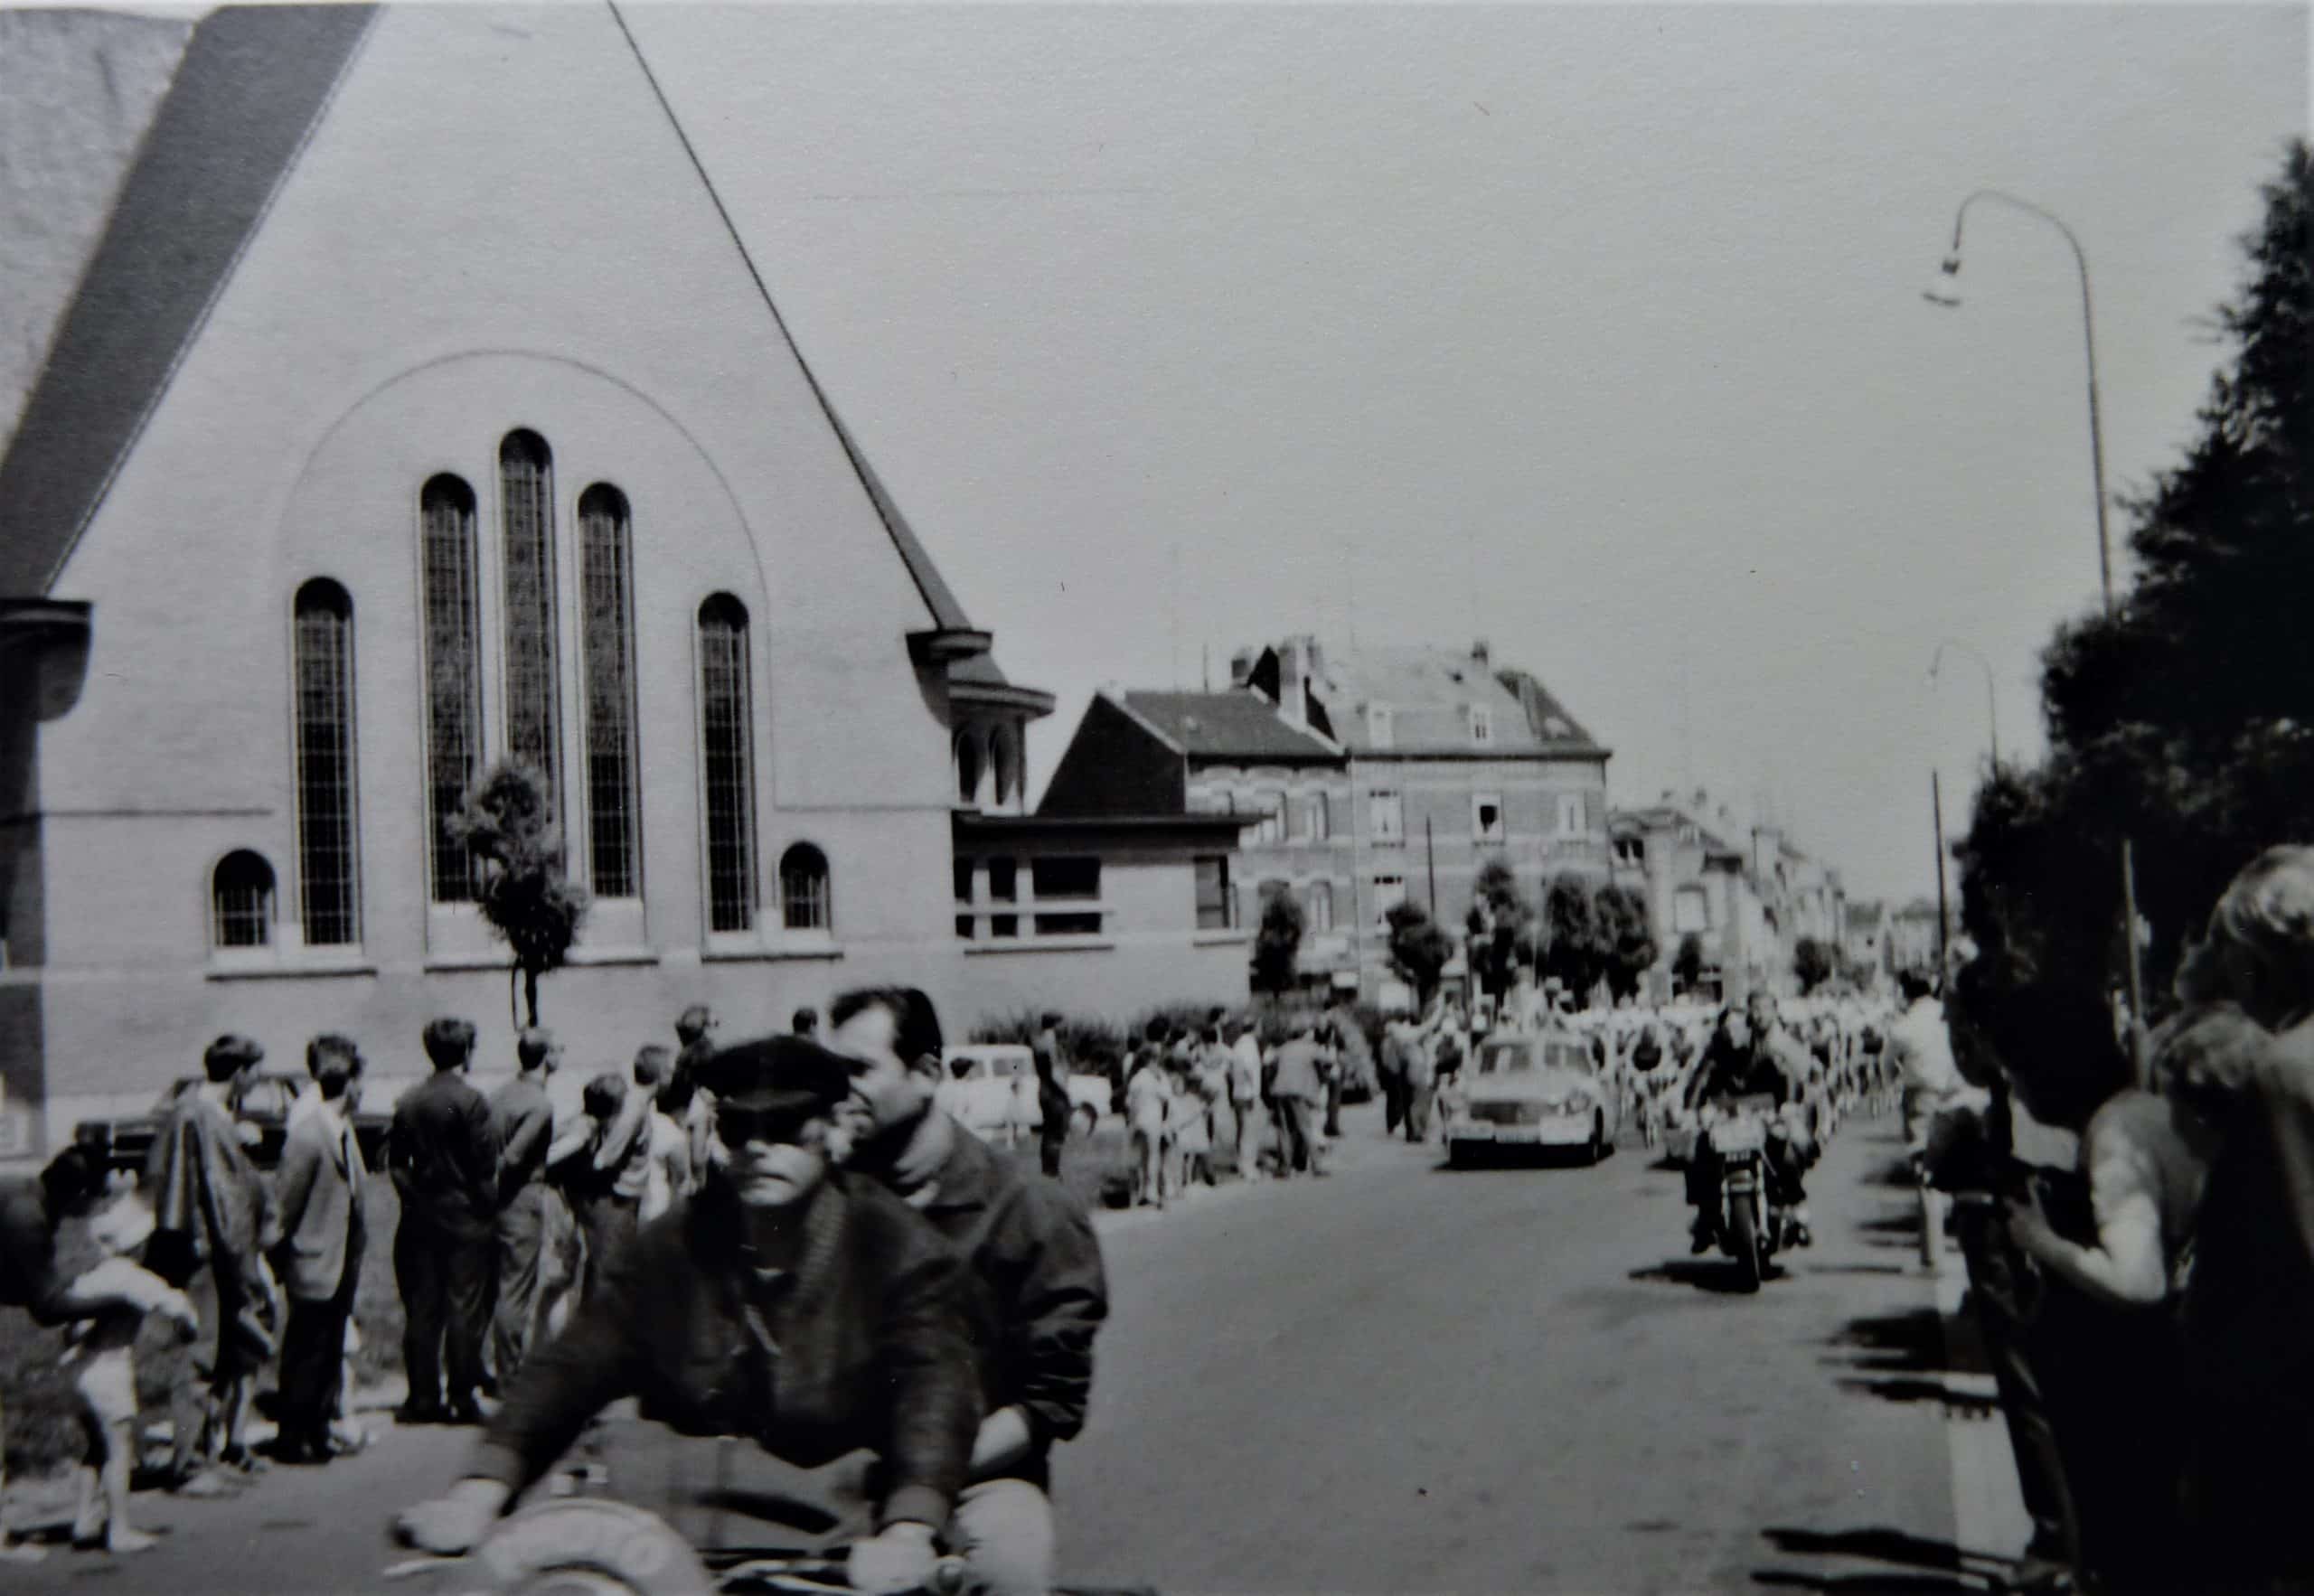 De Tour de France rijdt door Anderlecht in 1968. Foto met dank aan Christian Polfliet, ingekleurd en verbeterd door MyHeritage